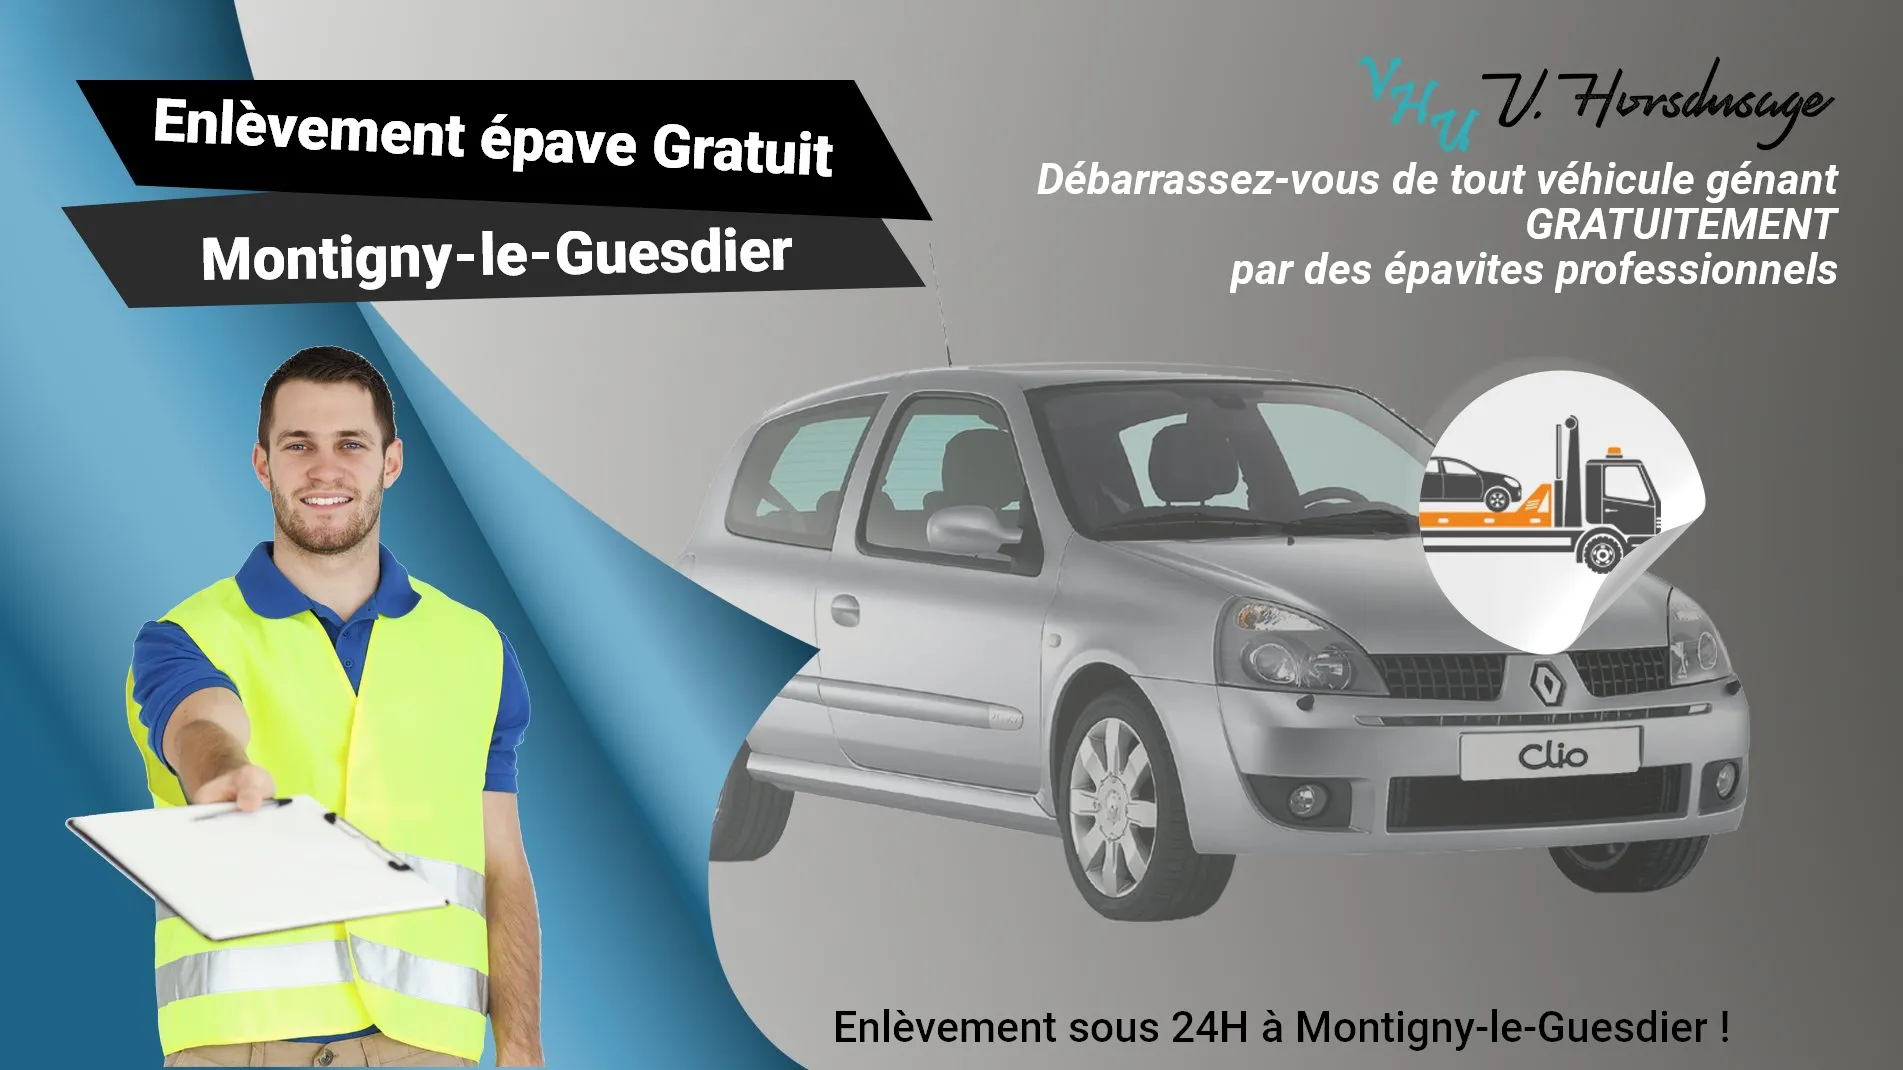 Pour un enlèvement gratuit à Montigny-le-Guesdier, contactez nos épavistes agréé VHU